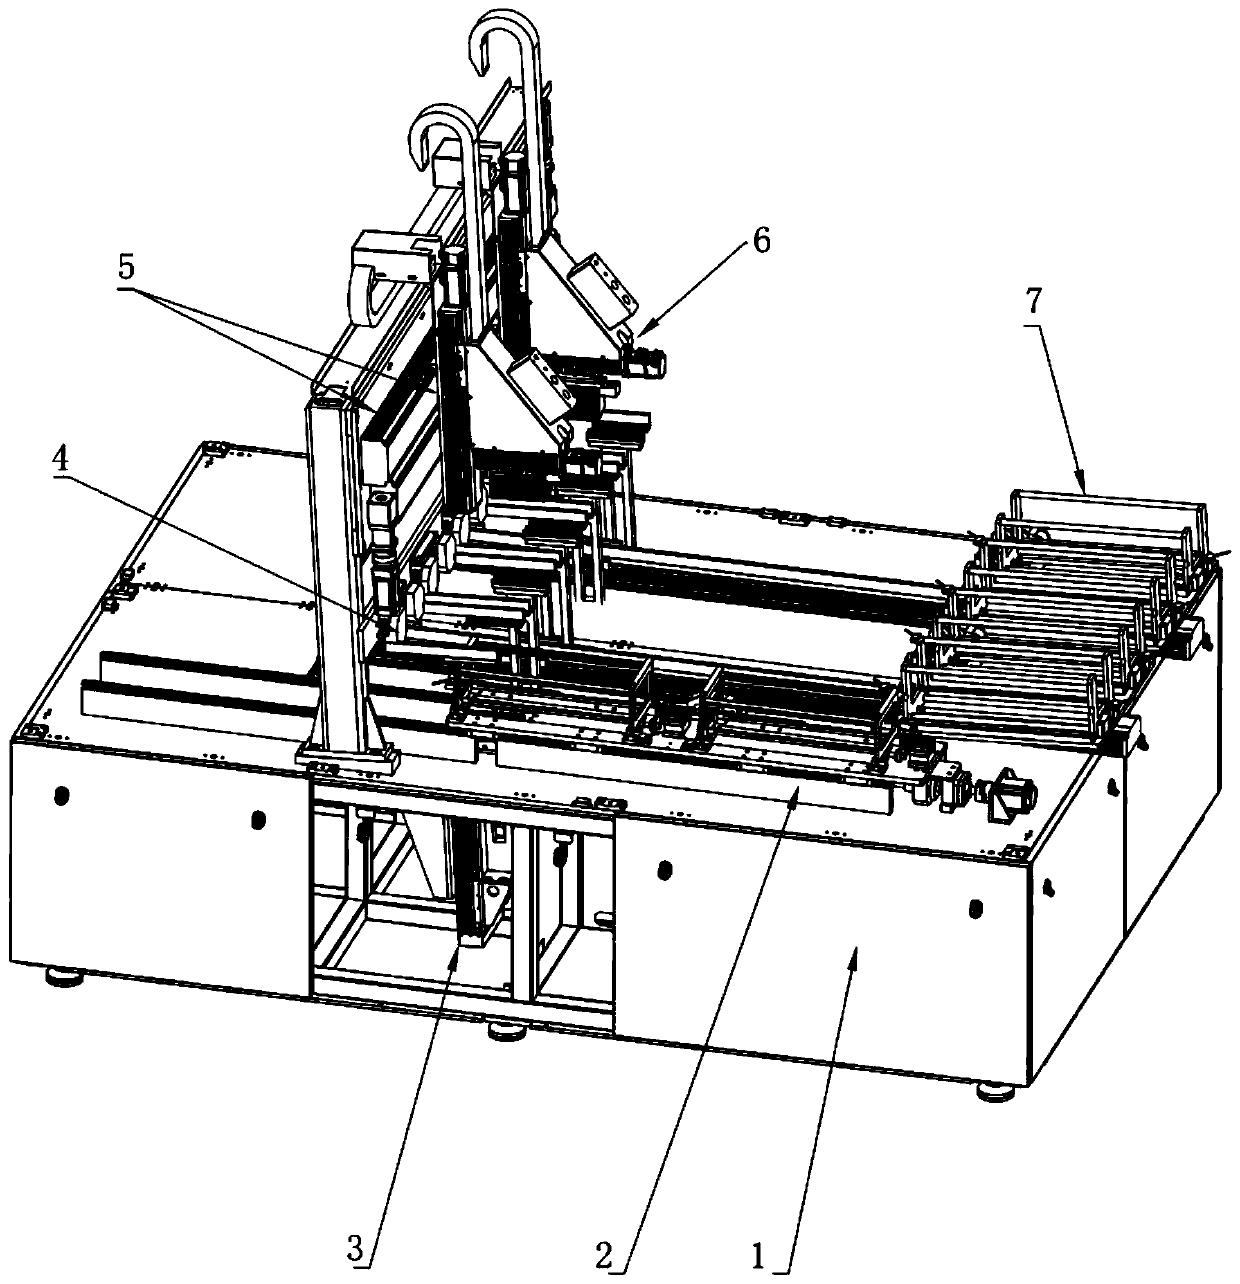 Automatic sheet inserting machine